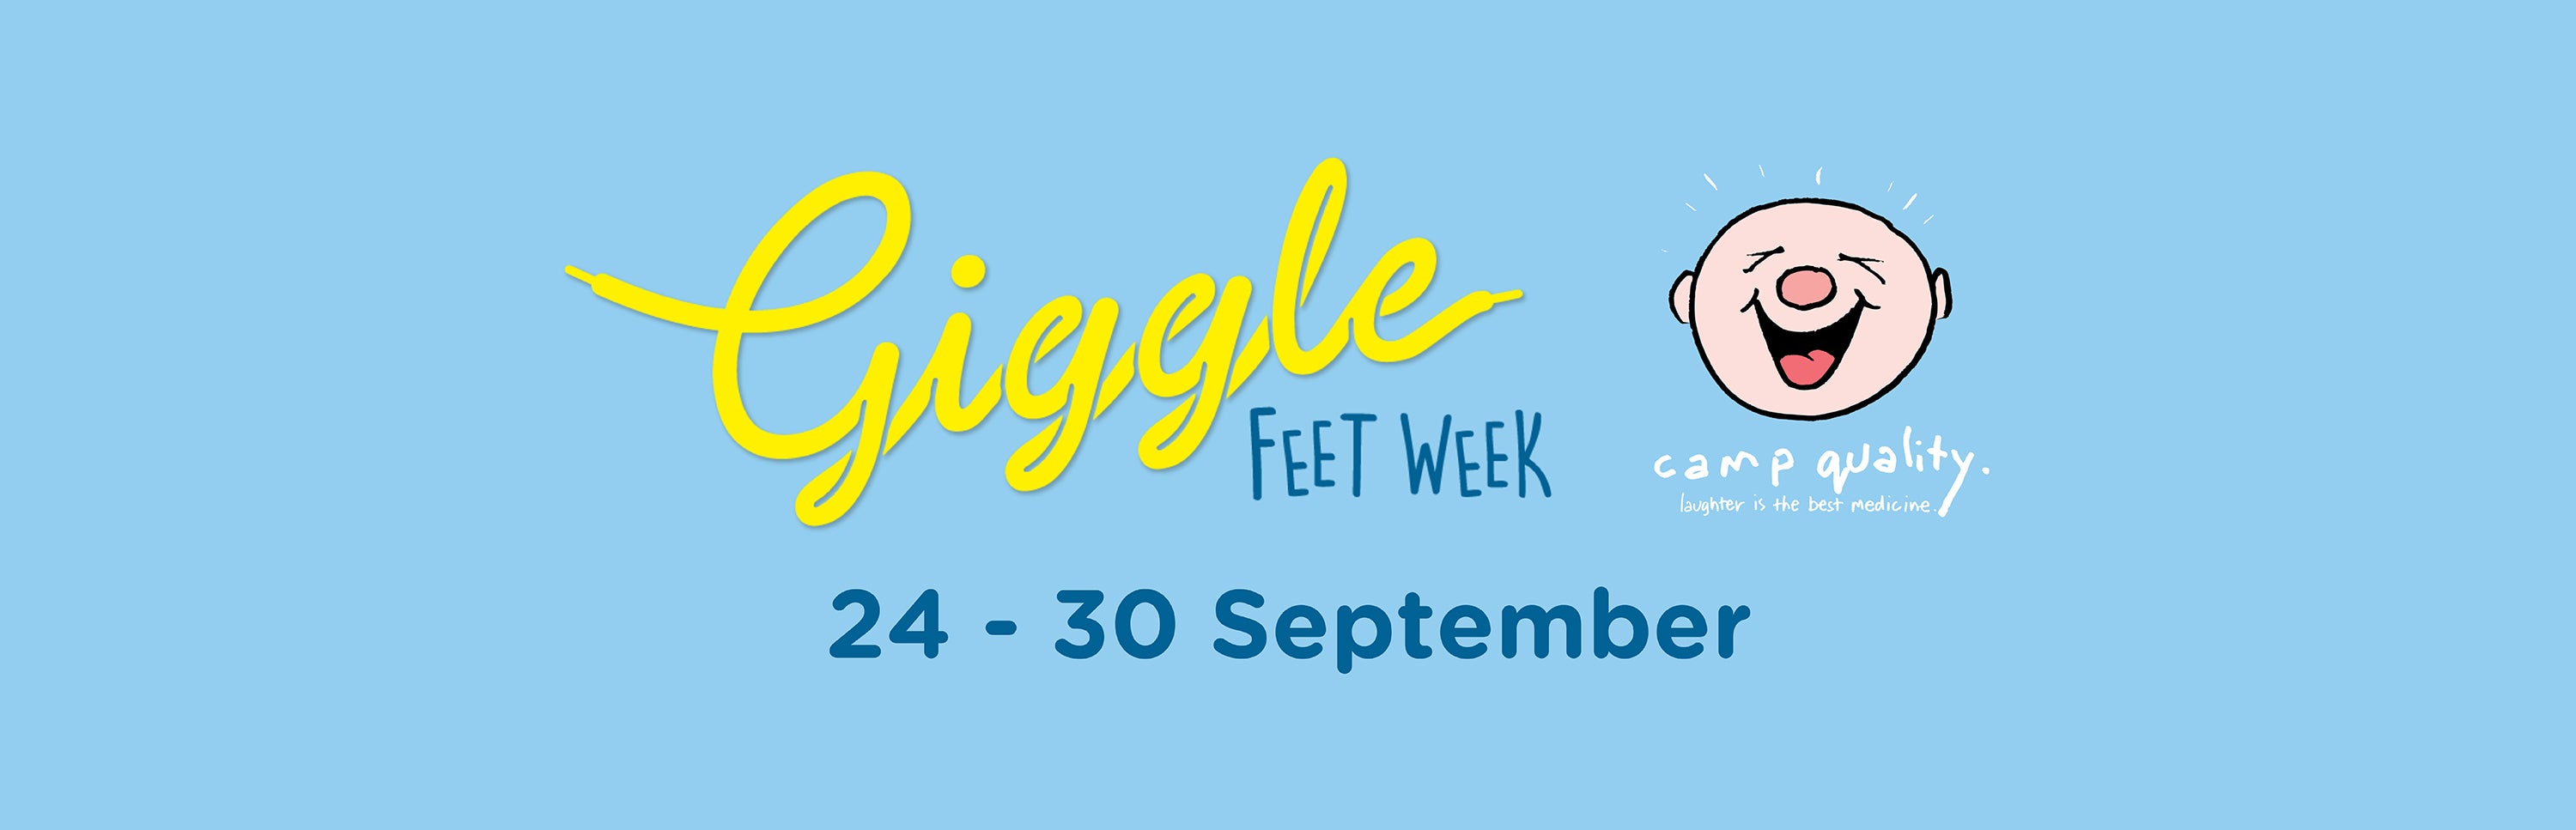 Giggle feet week 2021